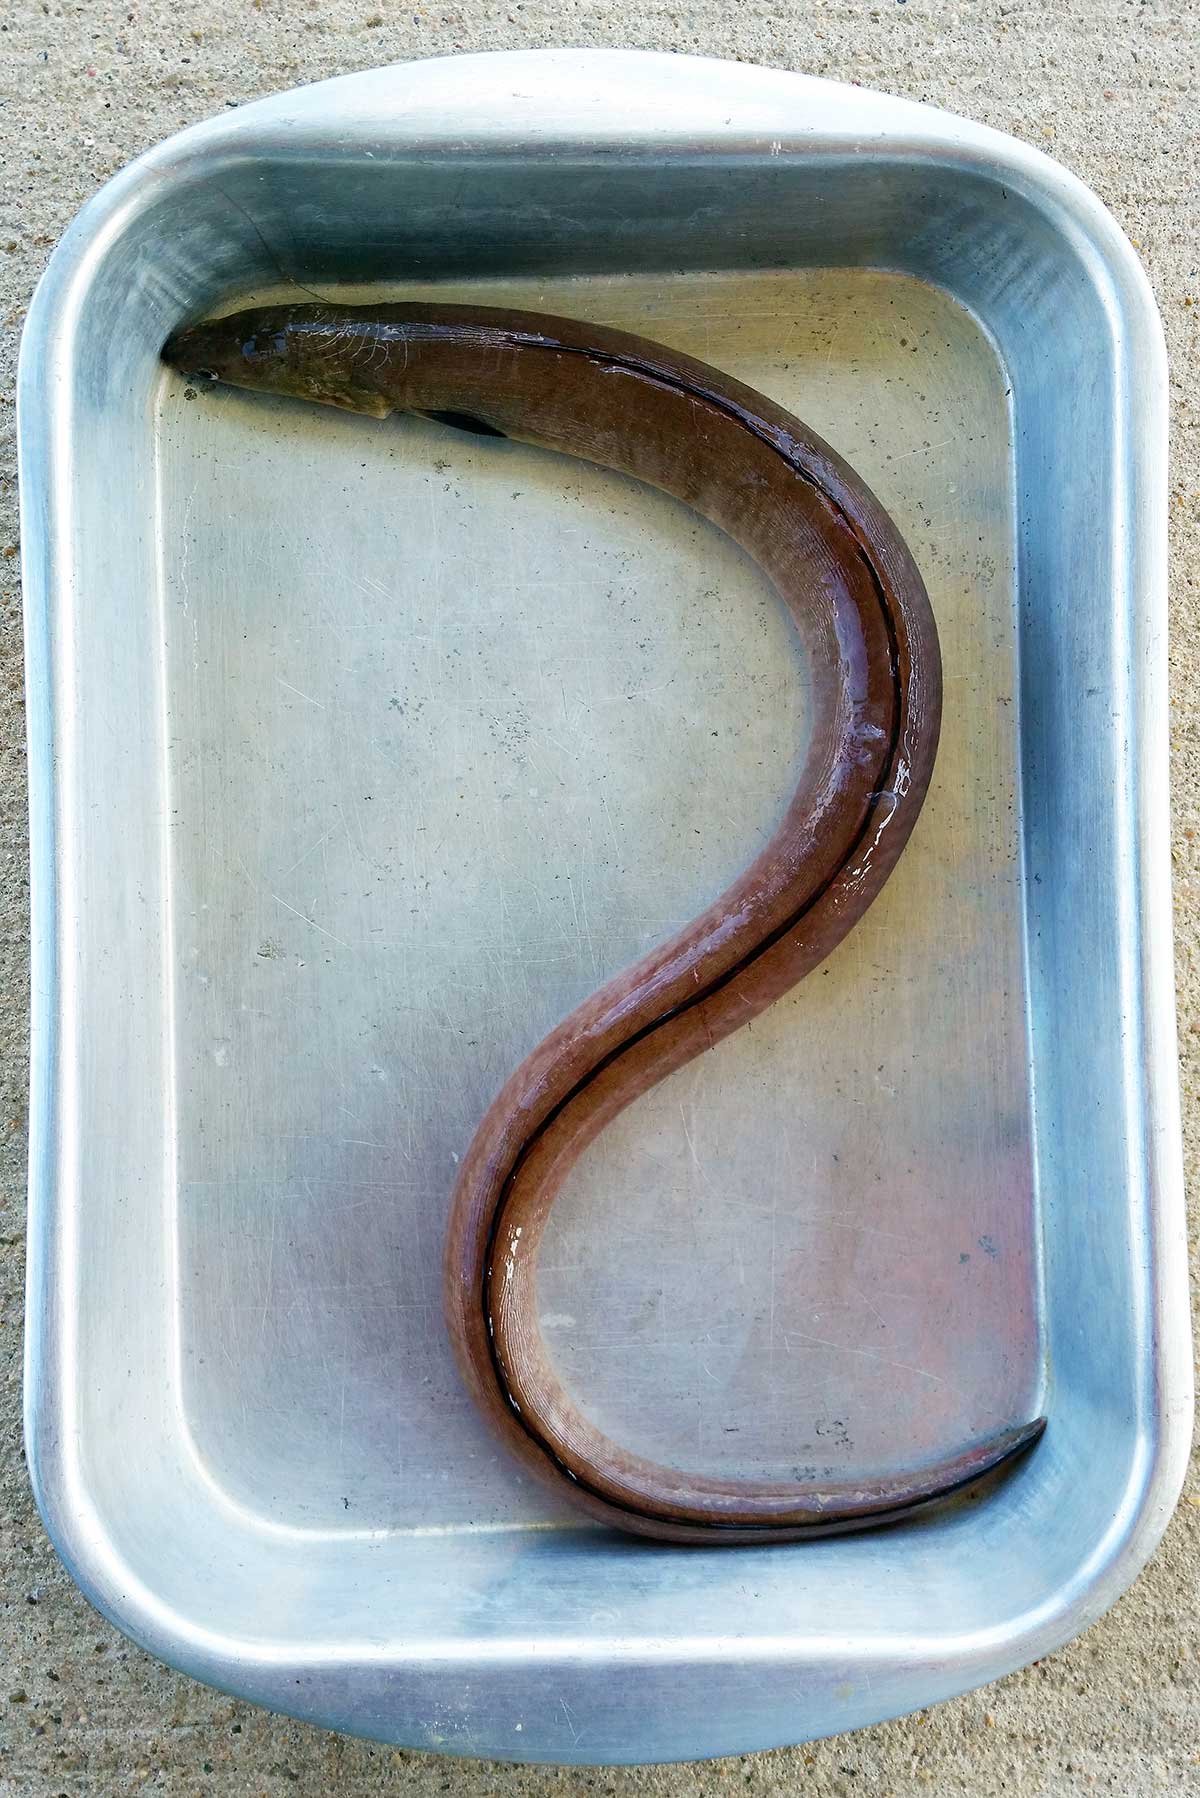 An eel in a pan